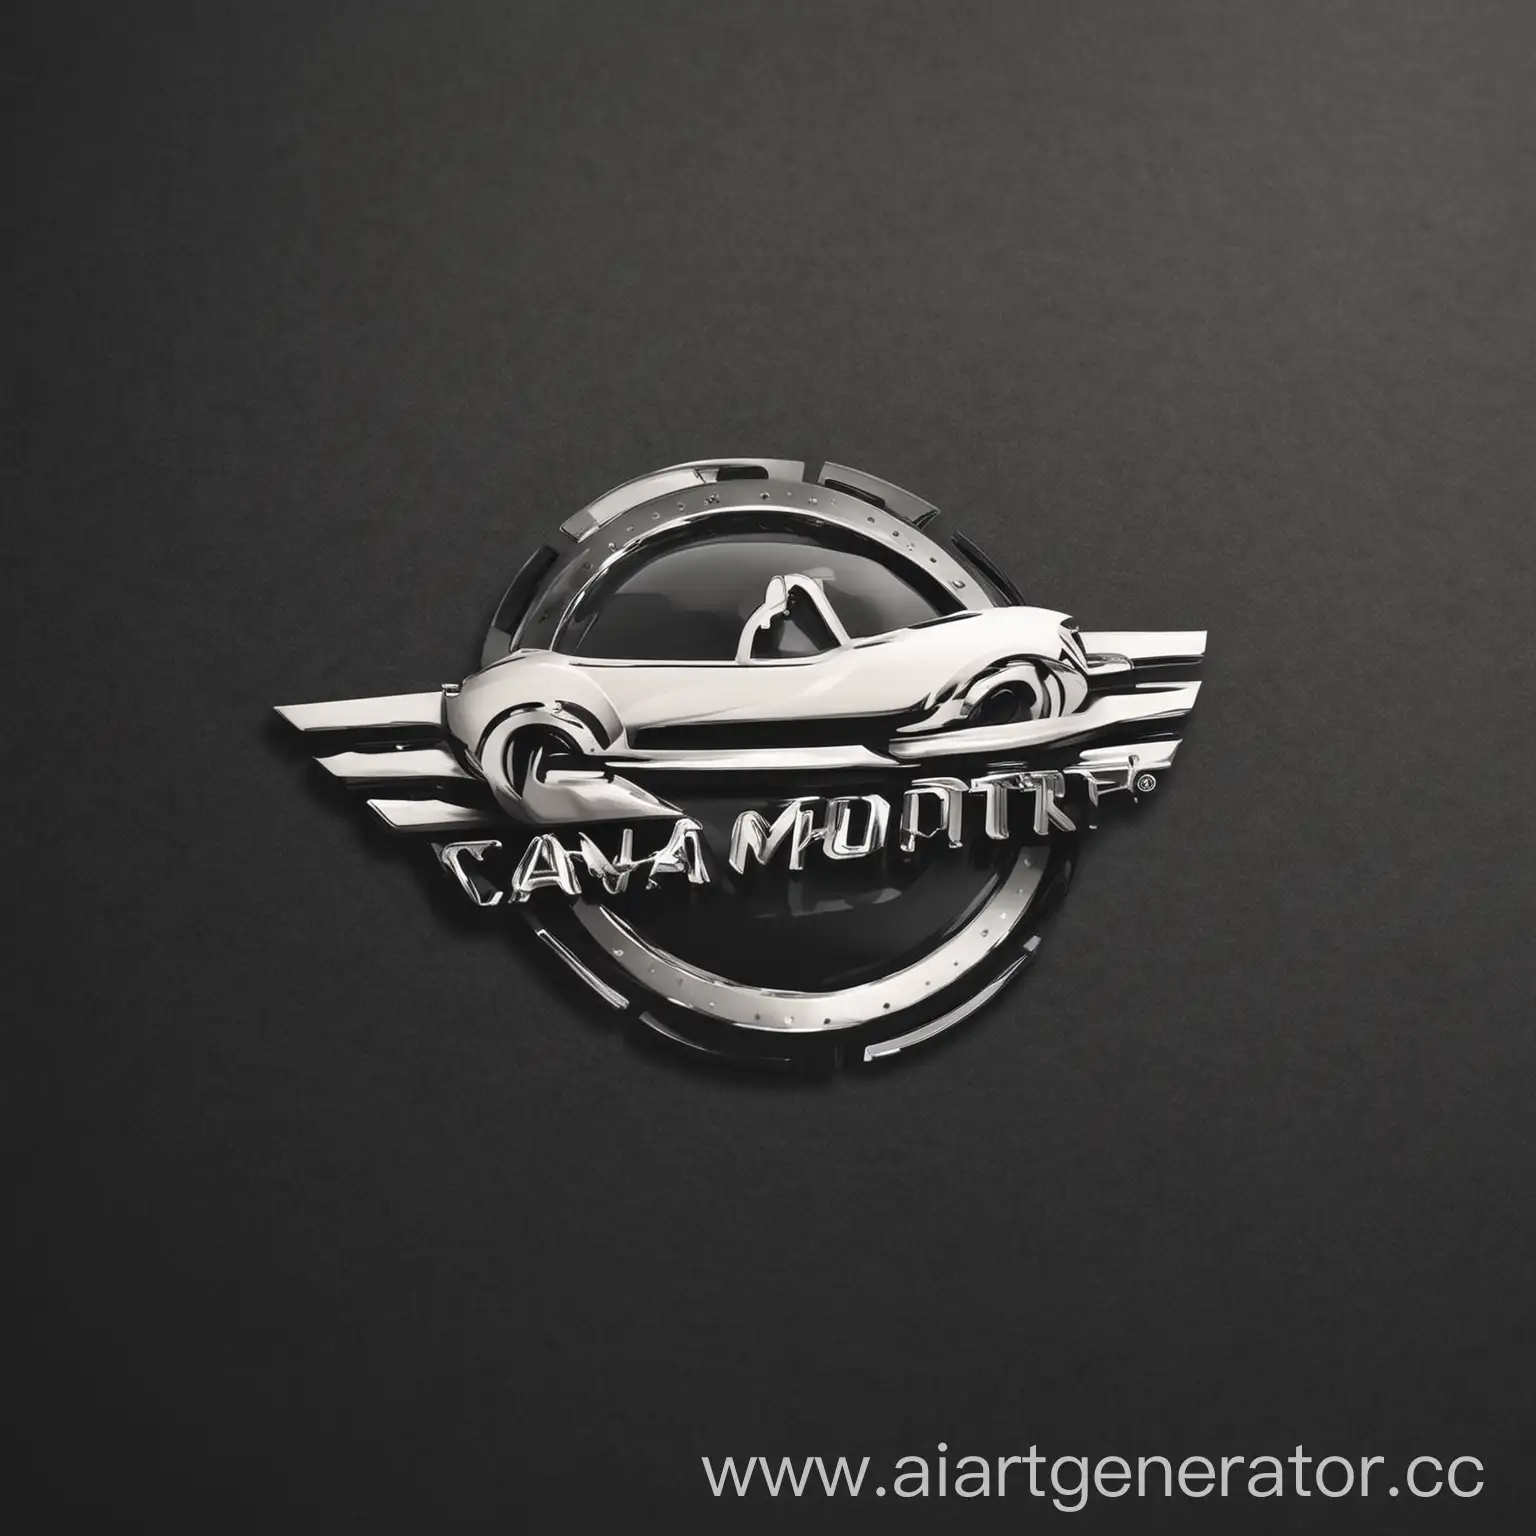 Luxury-Car-Imports-Emblem-on-Cityscape-Background